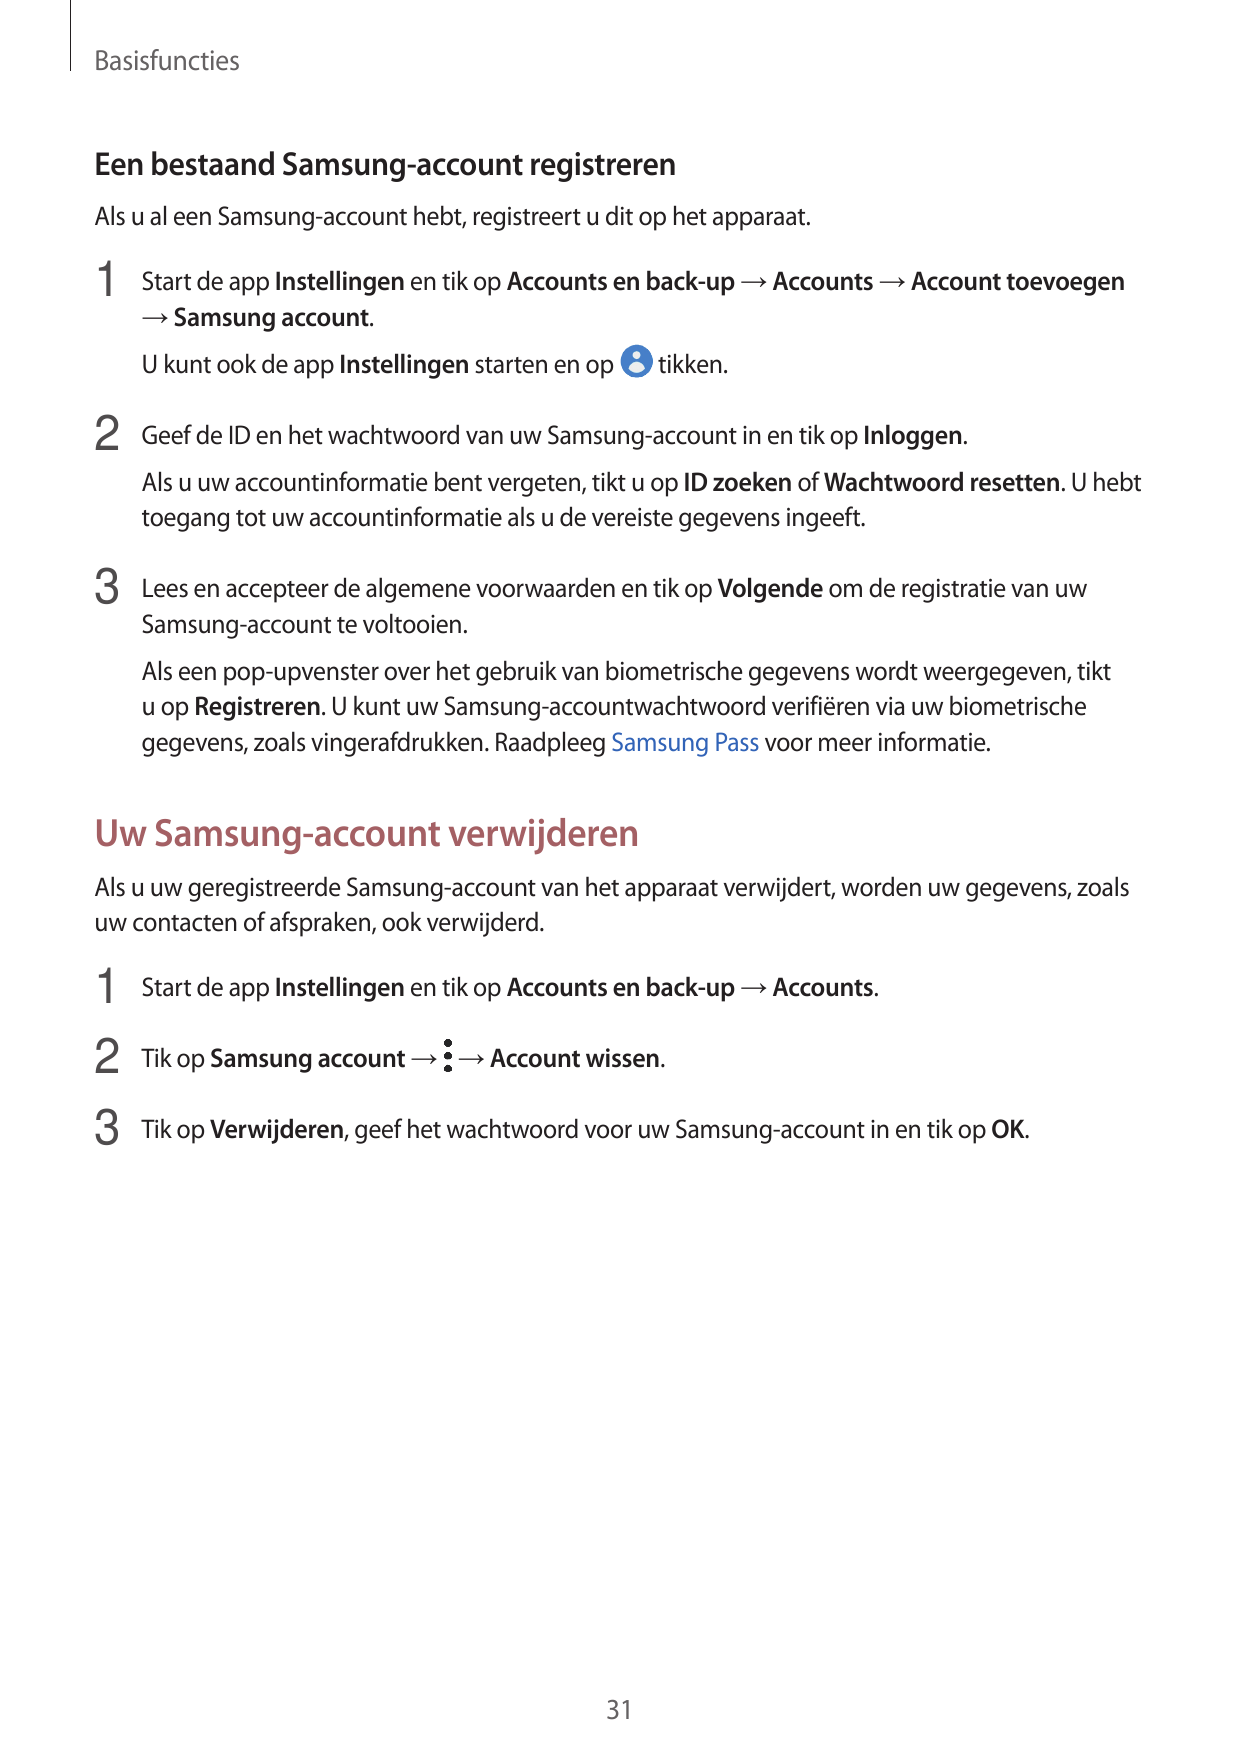 BasisfunctiesEen bestaand Samsung-account registrerenAls u al een Samsung-account hebt, registreert u dit op het apparaat.1 Star